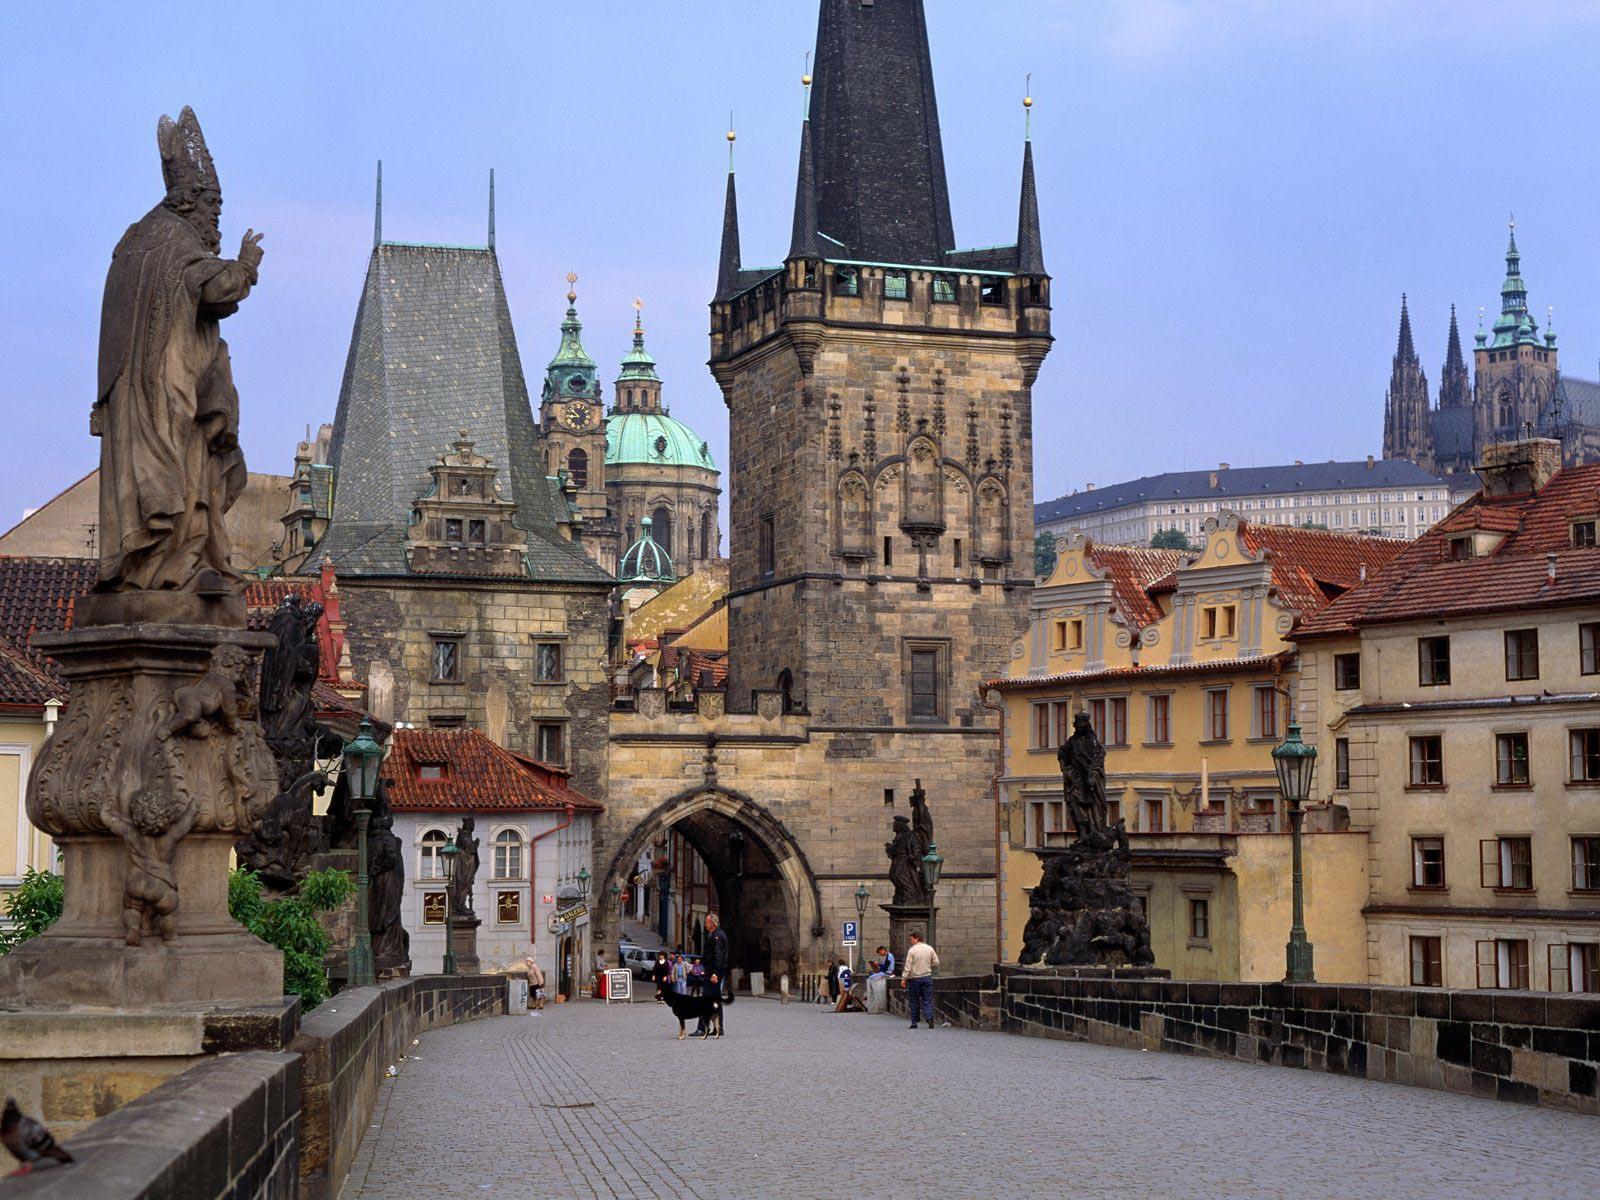 Praga historical borough of Warsaw, the capital of Poland. Free